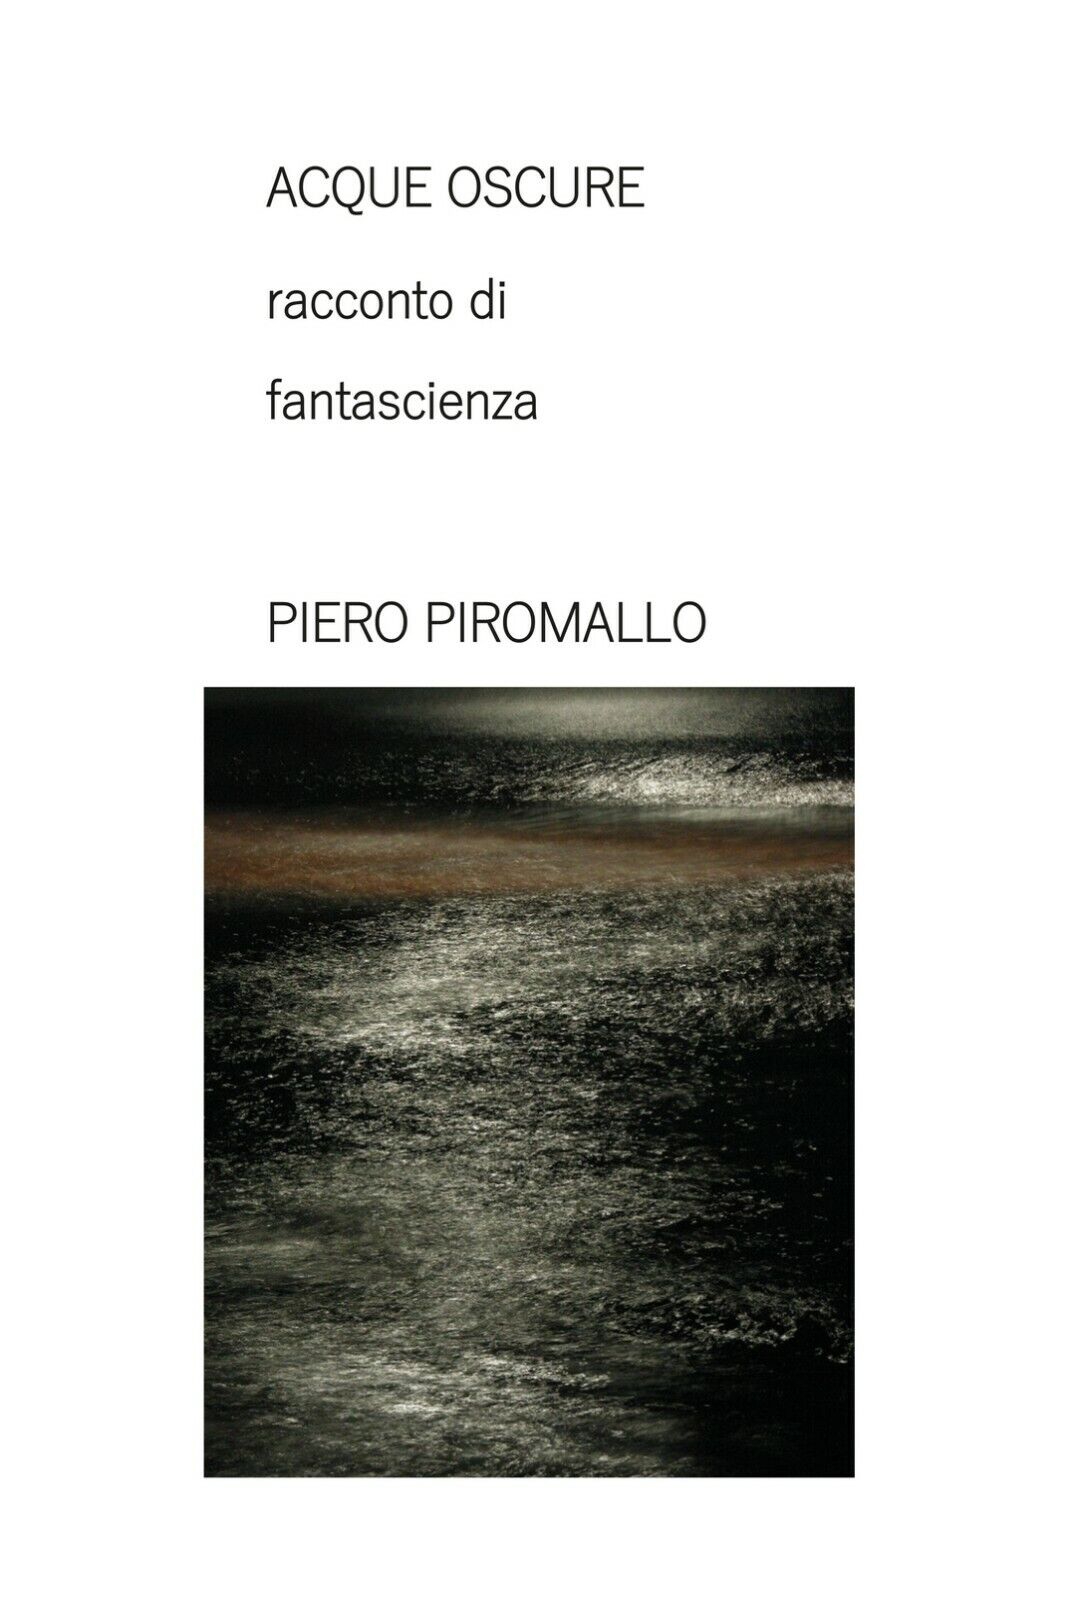 ACQUE OSCURE racconto di fantascienza  di Piero Piromallo,  2020,  Piero Piromal